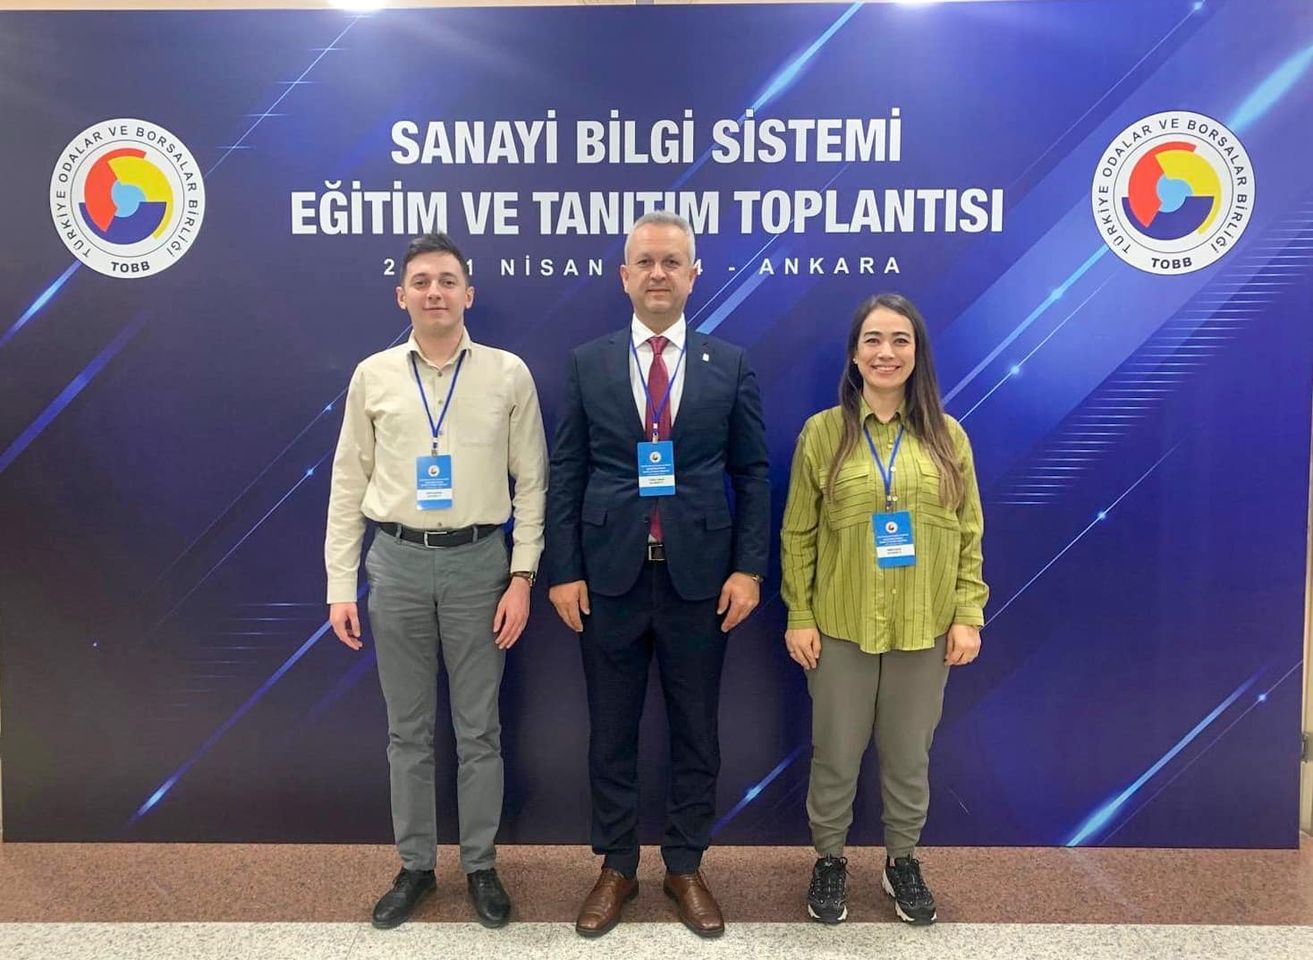 Balıkesir Ticaret Odası, Türkiye Odalar ve Borsalar Birliği (TOBB) tarafından düzenlenen Sanayi Bilgi Sistemi Eğitim ve Tanıtım Toplantısı'na ev sahipliği yaptı.